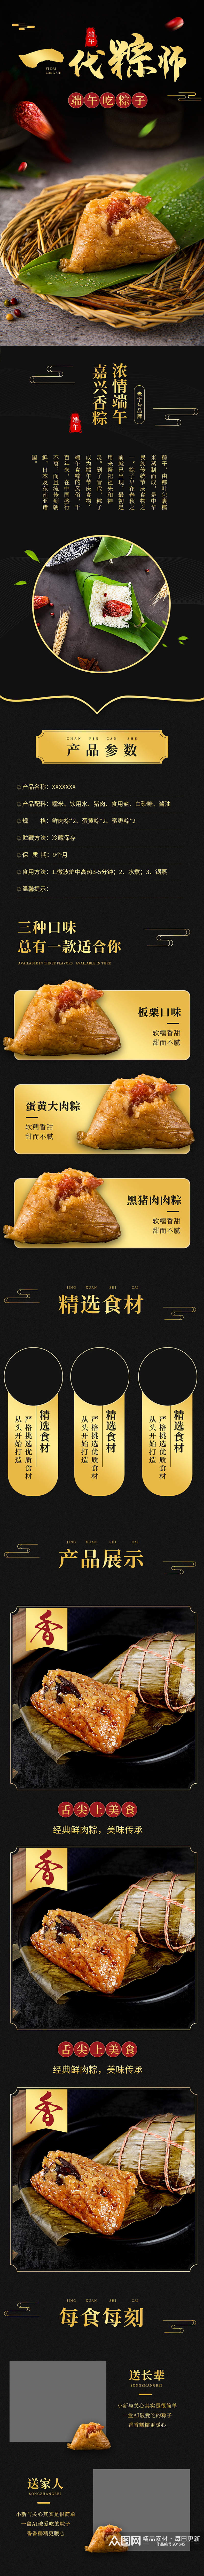 淘宝美食端午节糯米猪肉粽子详情页描述素材